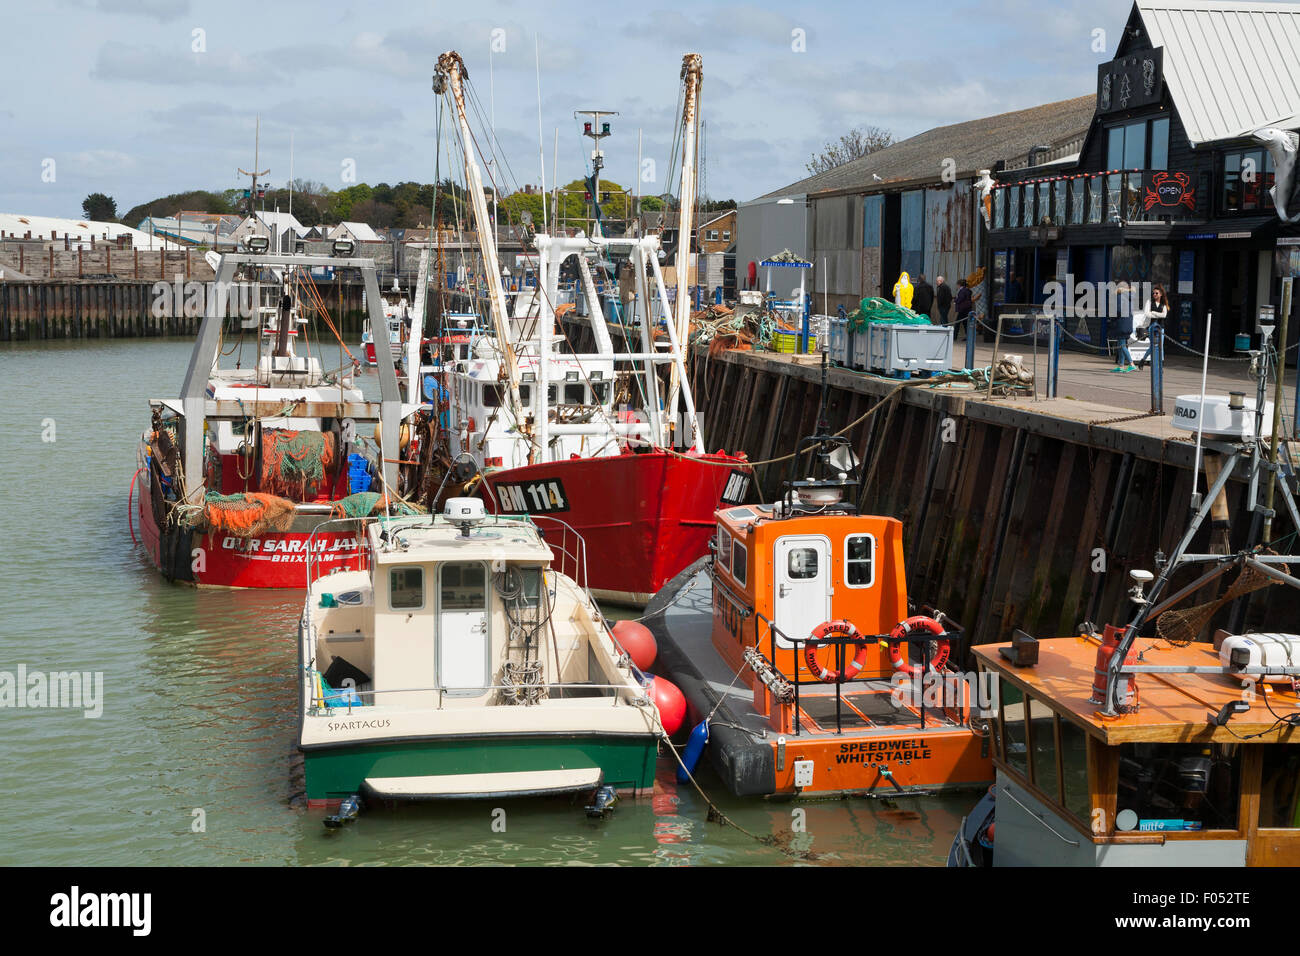 Bateau de pêche / bateaux à quai dans le port de Whitstable, Whitstable. Kent. UK Banque D'Images